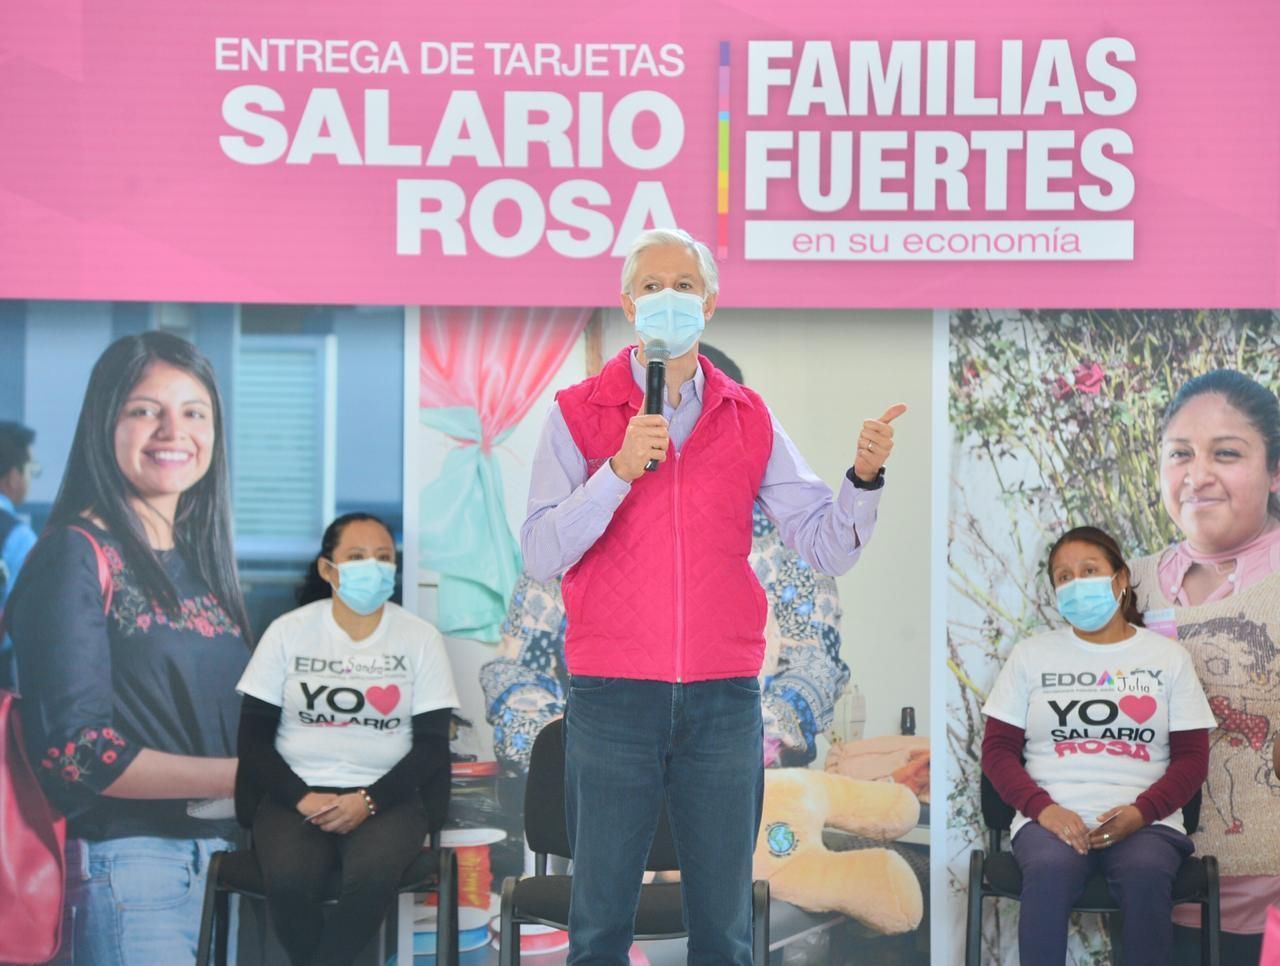 Salario Rosa impulsa economía familiar en contingencia sanitaria